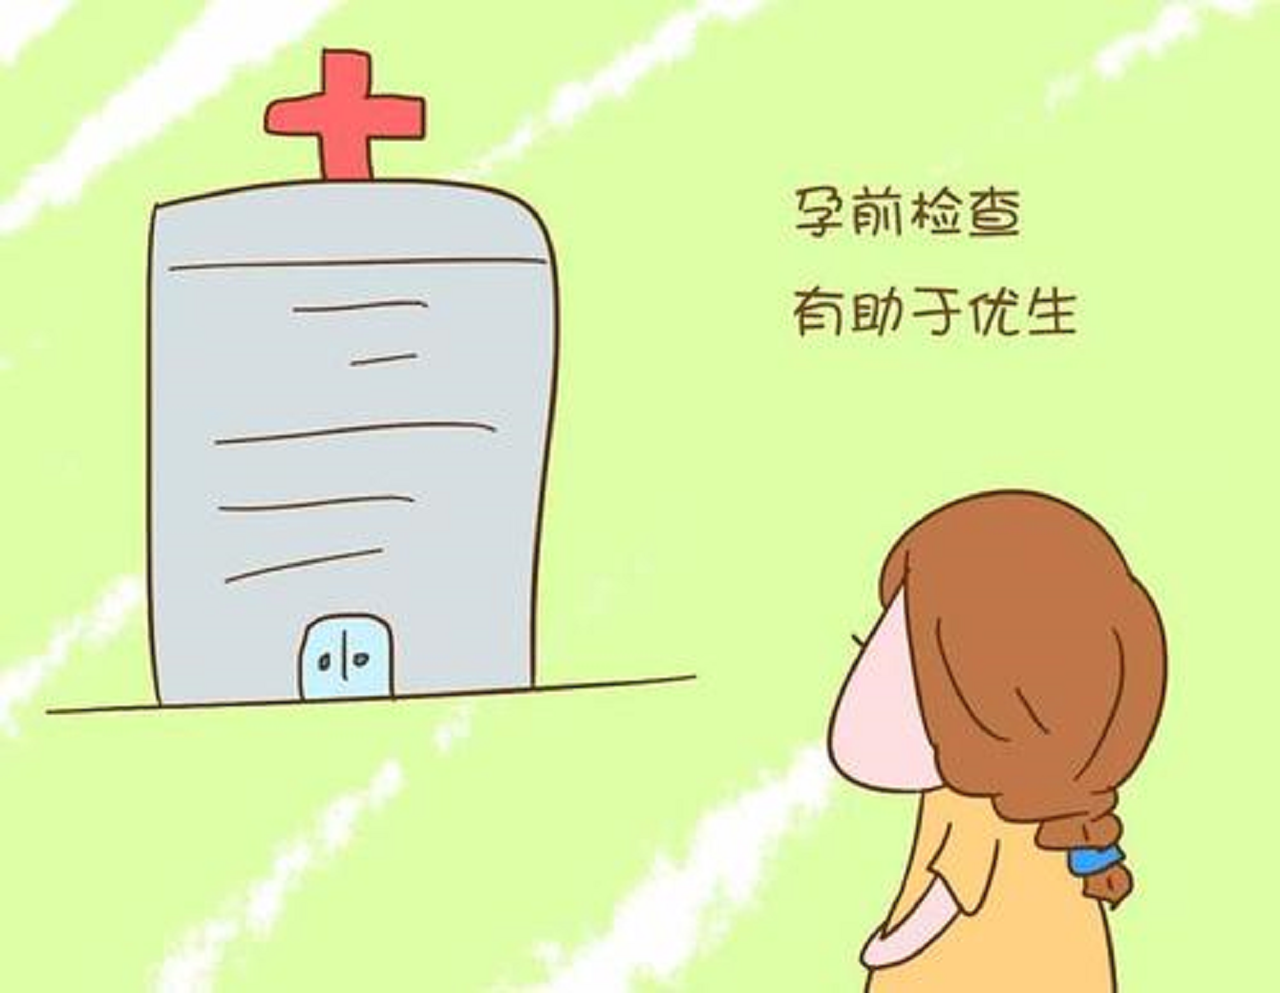 香港验血邮寄抽血,让孩子赢在起跑线上，优生优育，备孕期要紧盯两个环节